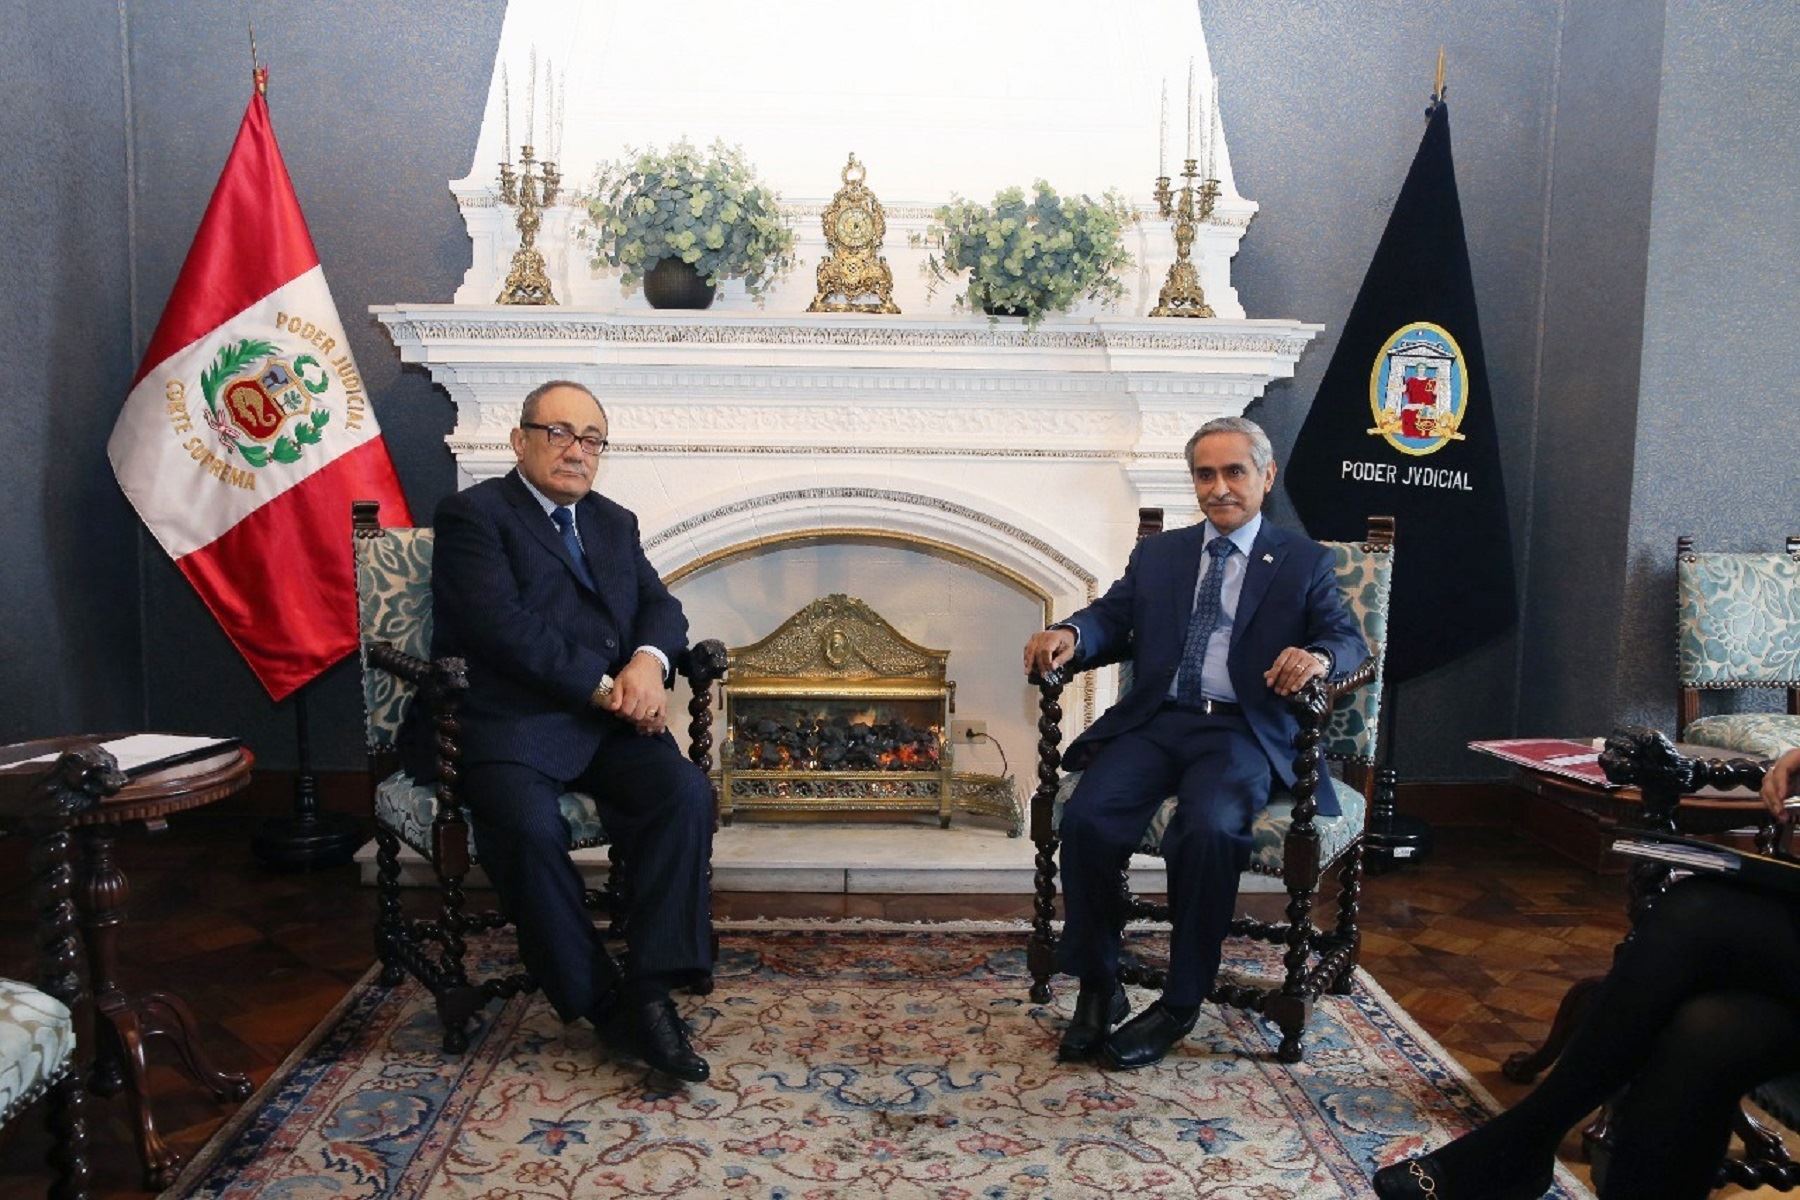 El presidente del Poder Judicial, Duberlí Rodríguez, se reunió con ministro de Educación, Idel Vexler.